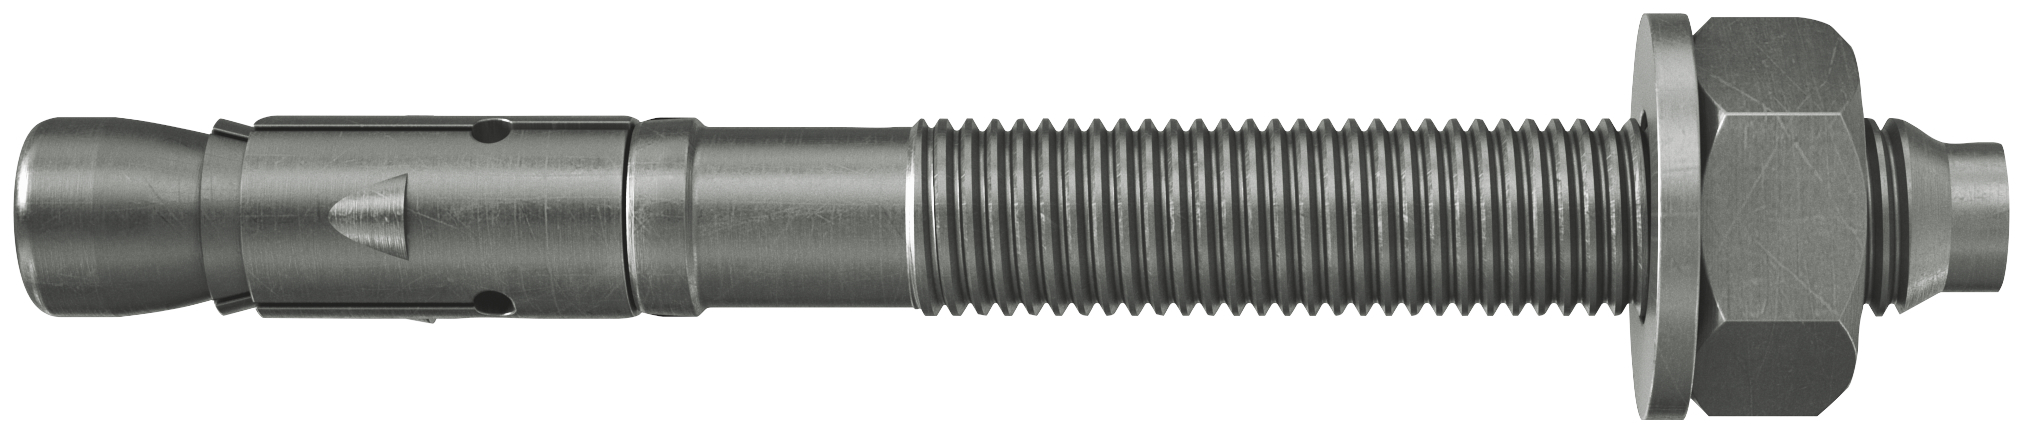 fischer Tassello acciaio FAZ II 12/30 A4 (20 Pz.) L'ancorante ad espansione ad alte prestazioni per carichi statici su calcestruzzo fessurato e per applicazioni sismiche. Versione in acciaio inossidabile con classe di resistenza alla corrosione CRC III..